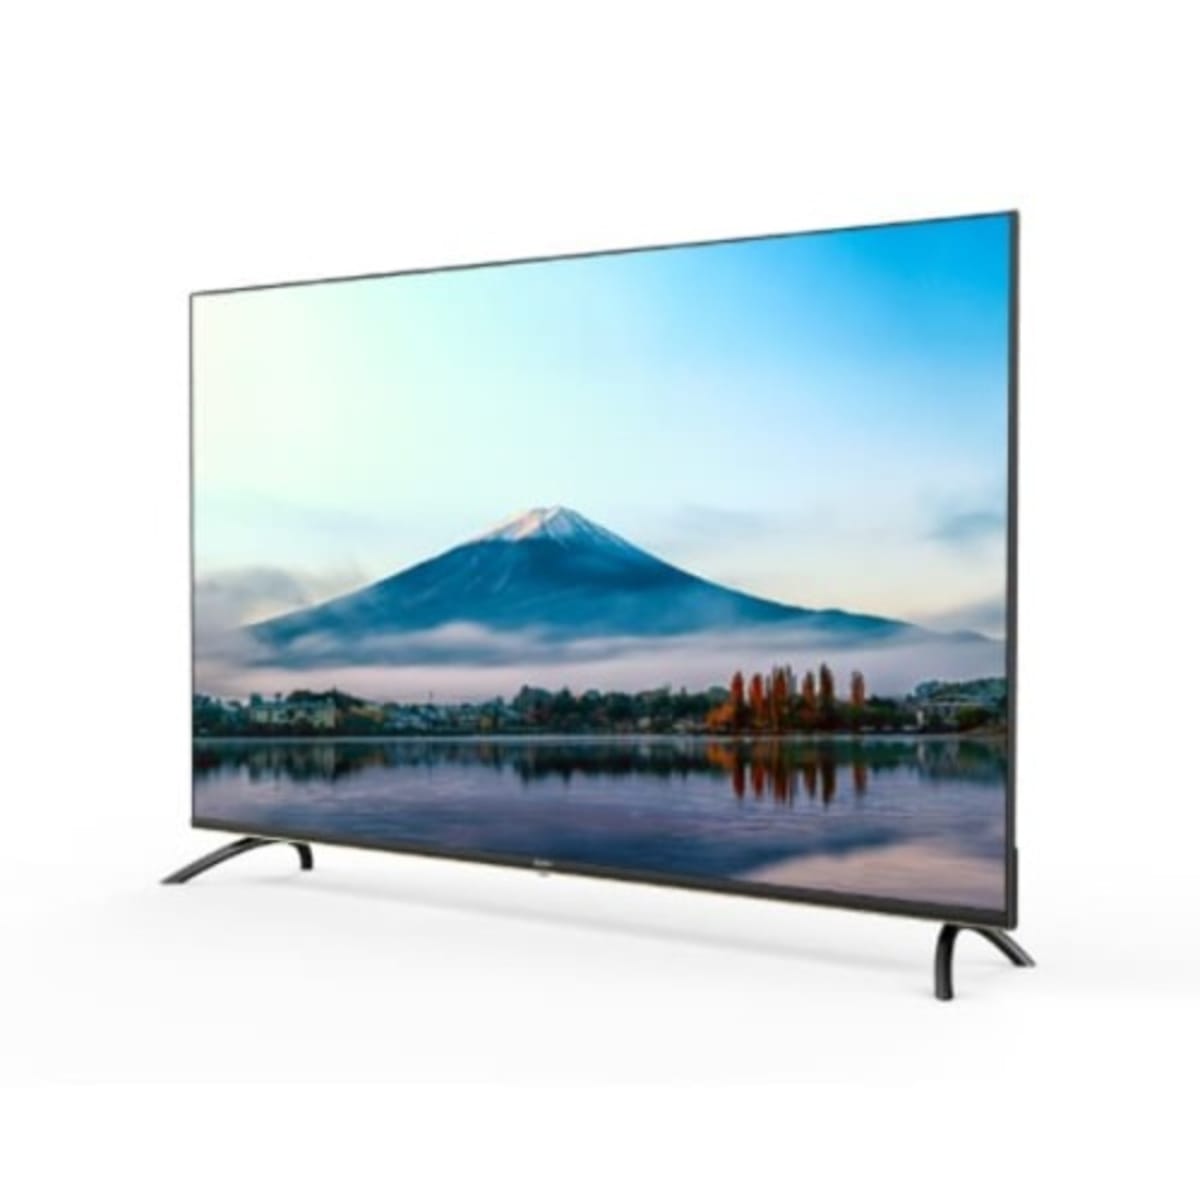 LG 50 Inches UHD 4K Smart Television with AI ThinQ 50UN6800PVA